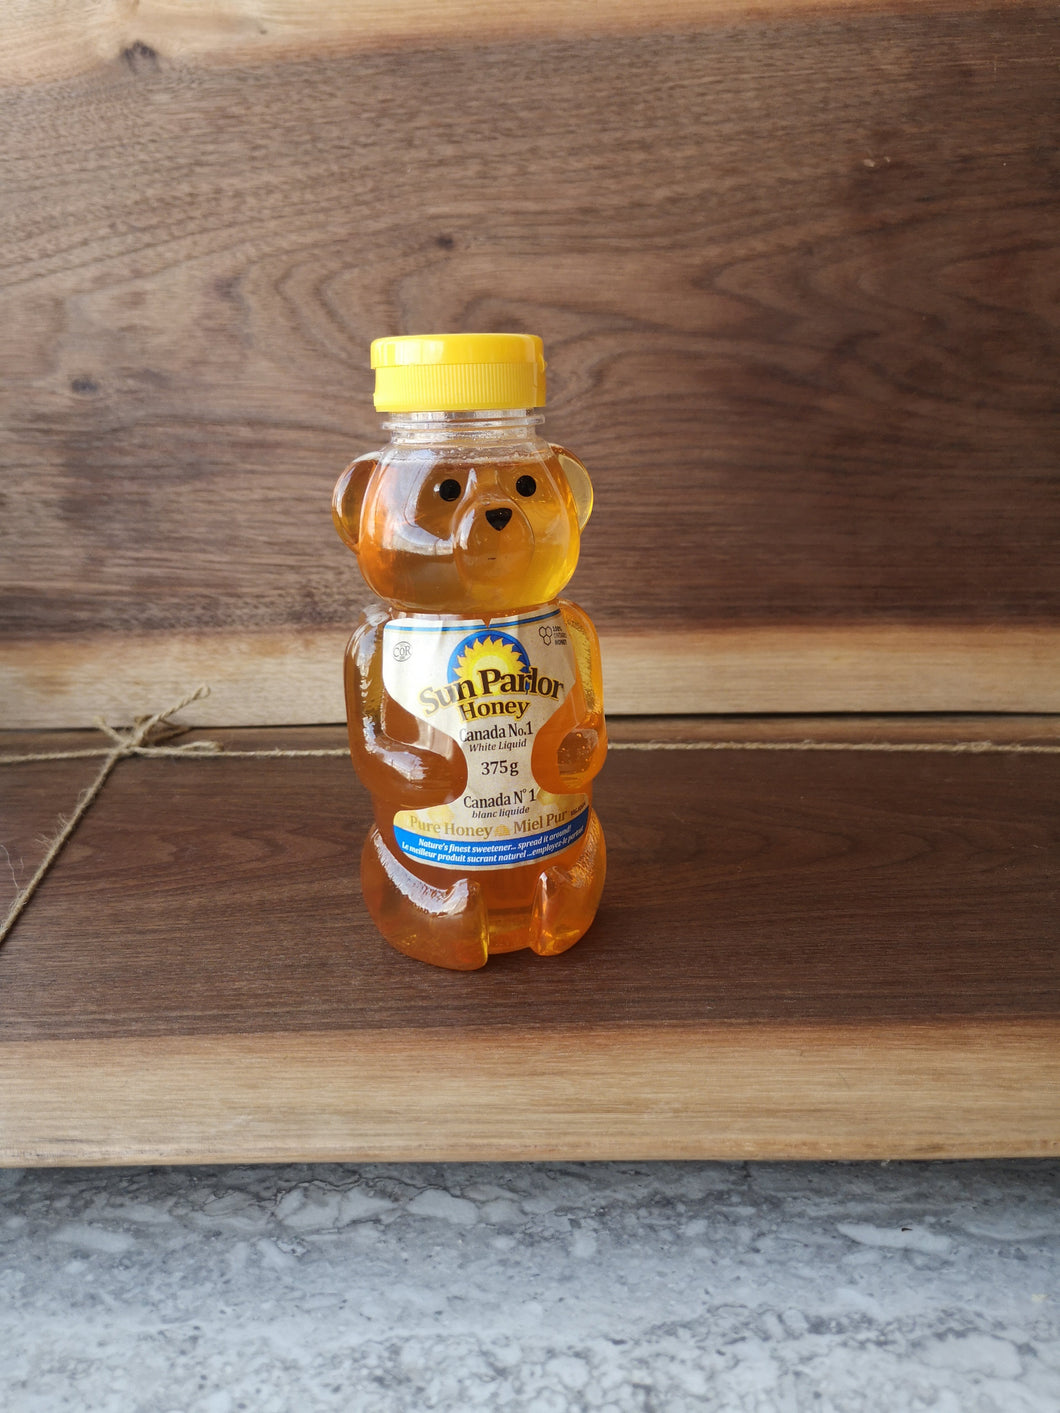 Sunparlour Liquid Honey